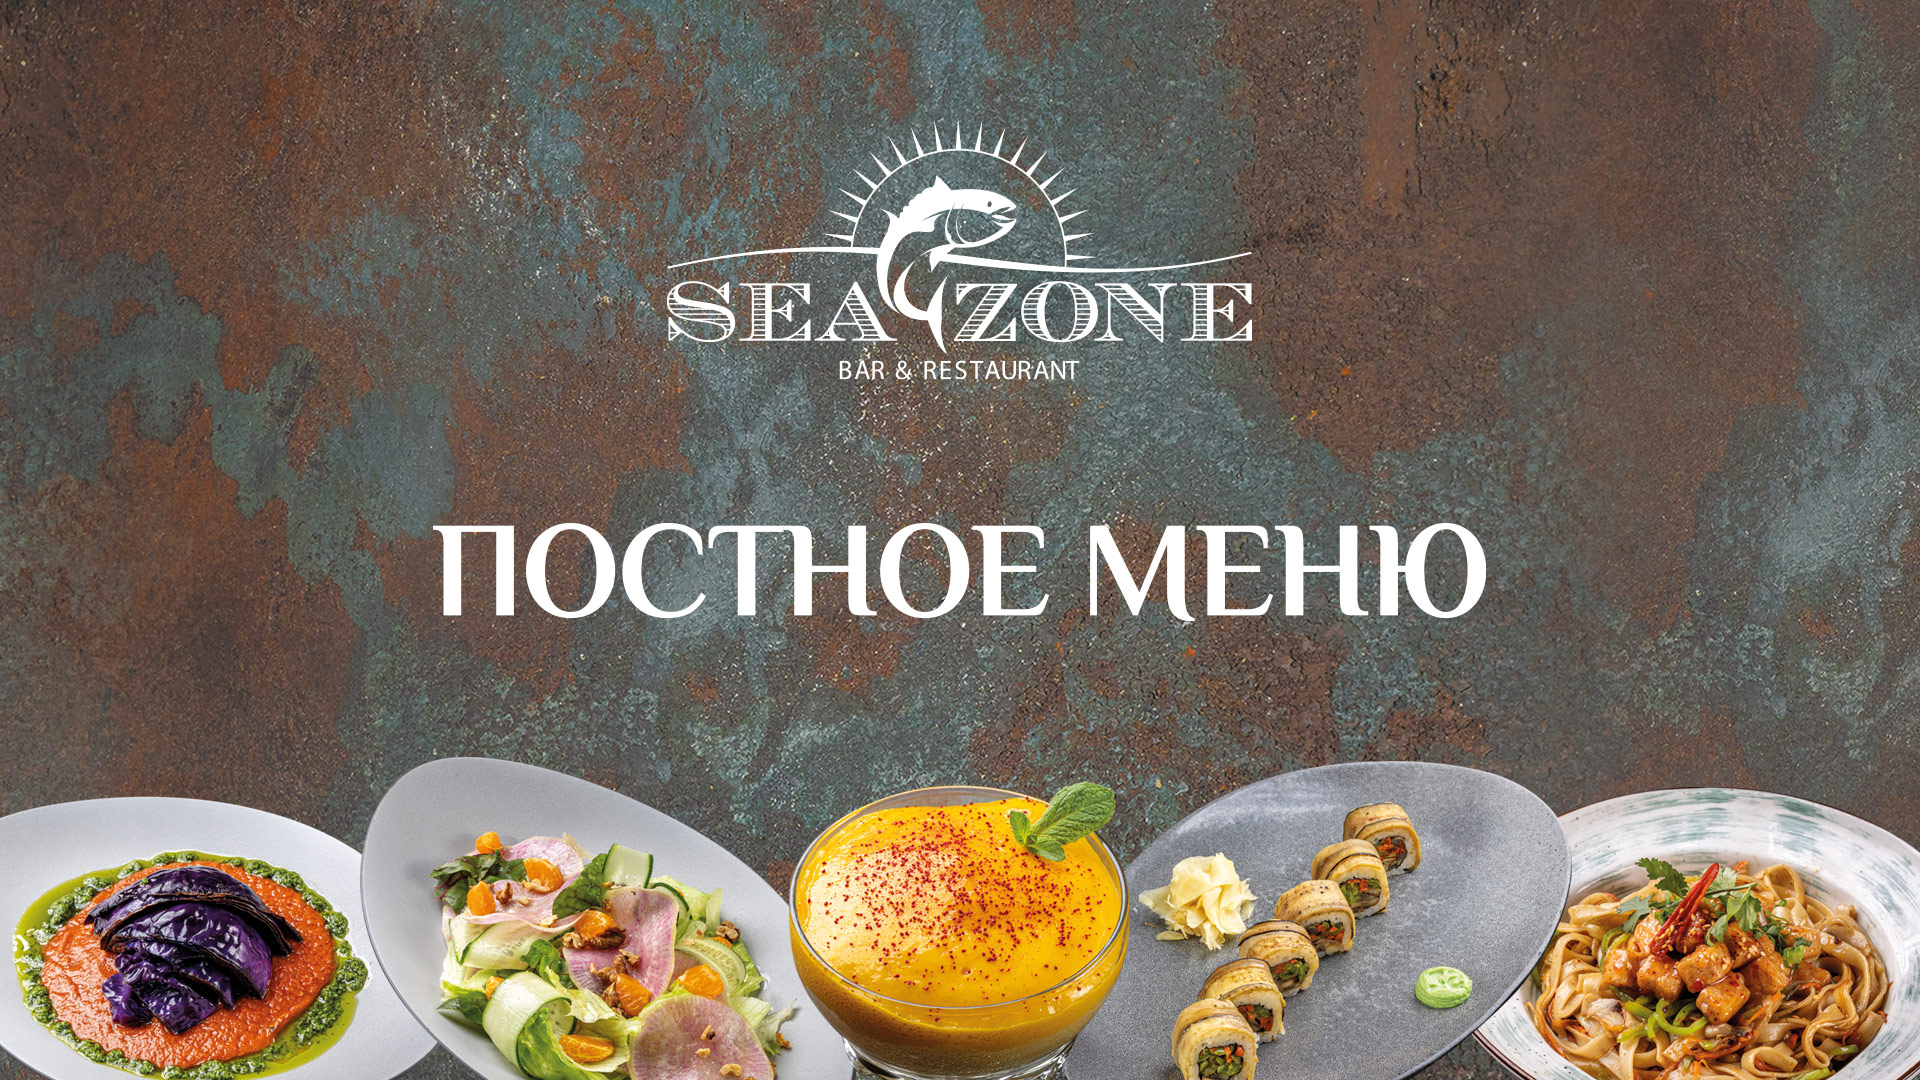 Постное меню в Sea Zone